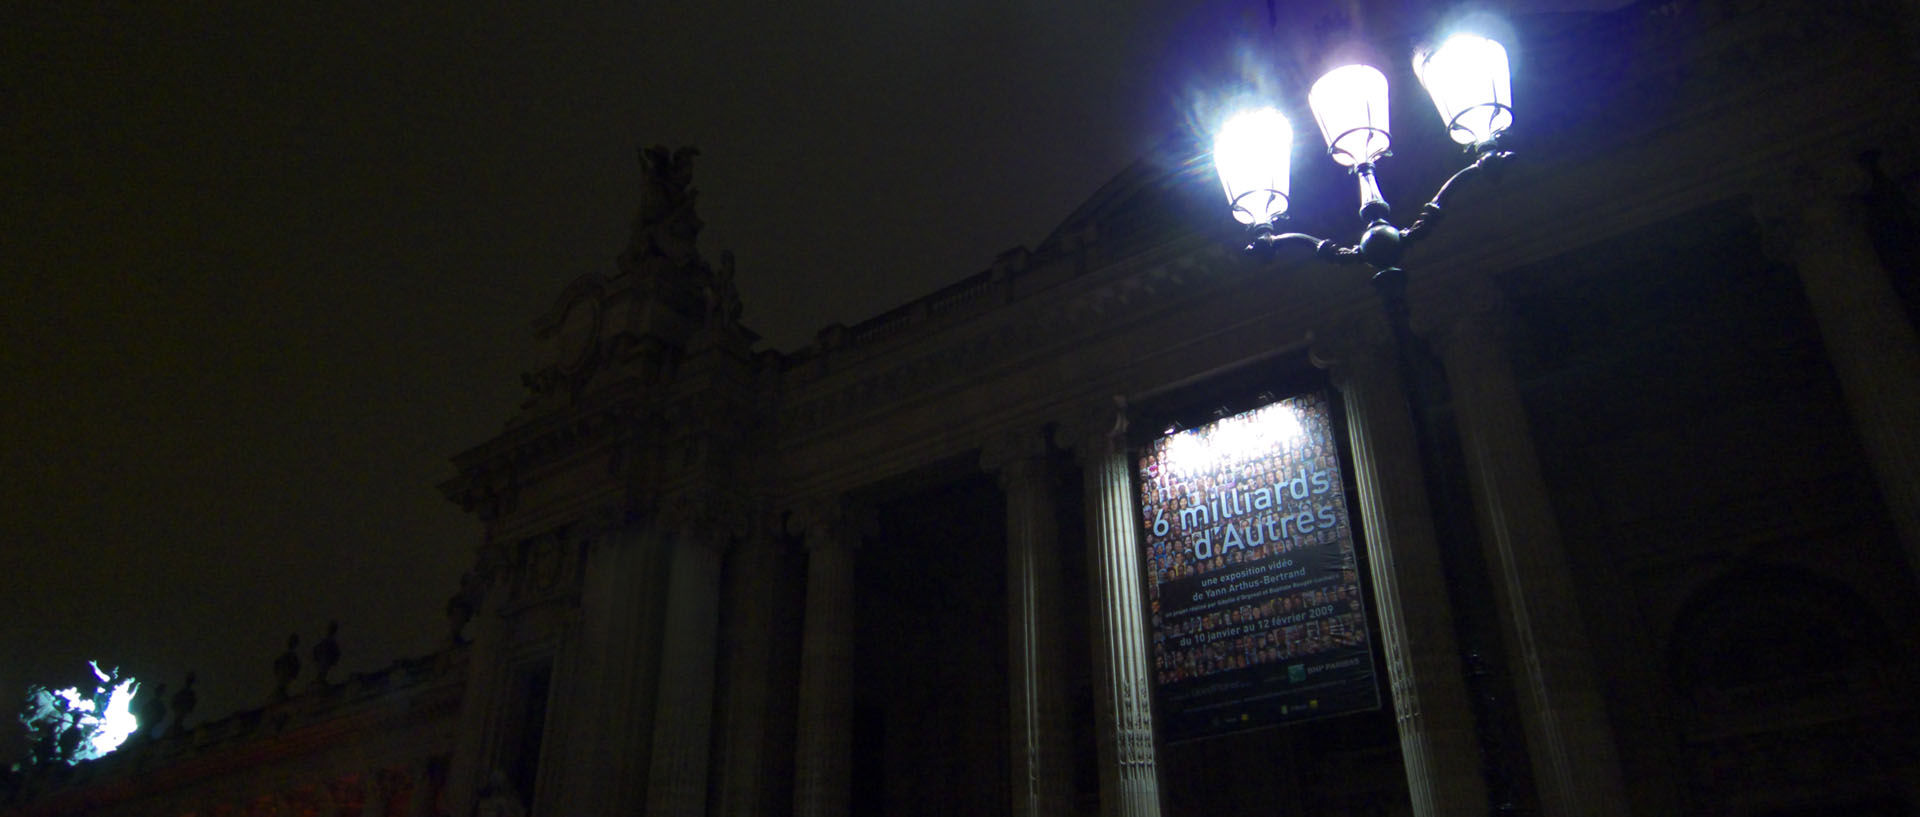 Mardi 13 janvier 2009, 21:19, le Grand Palais, à Paris.